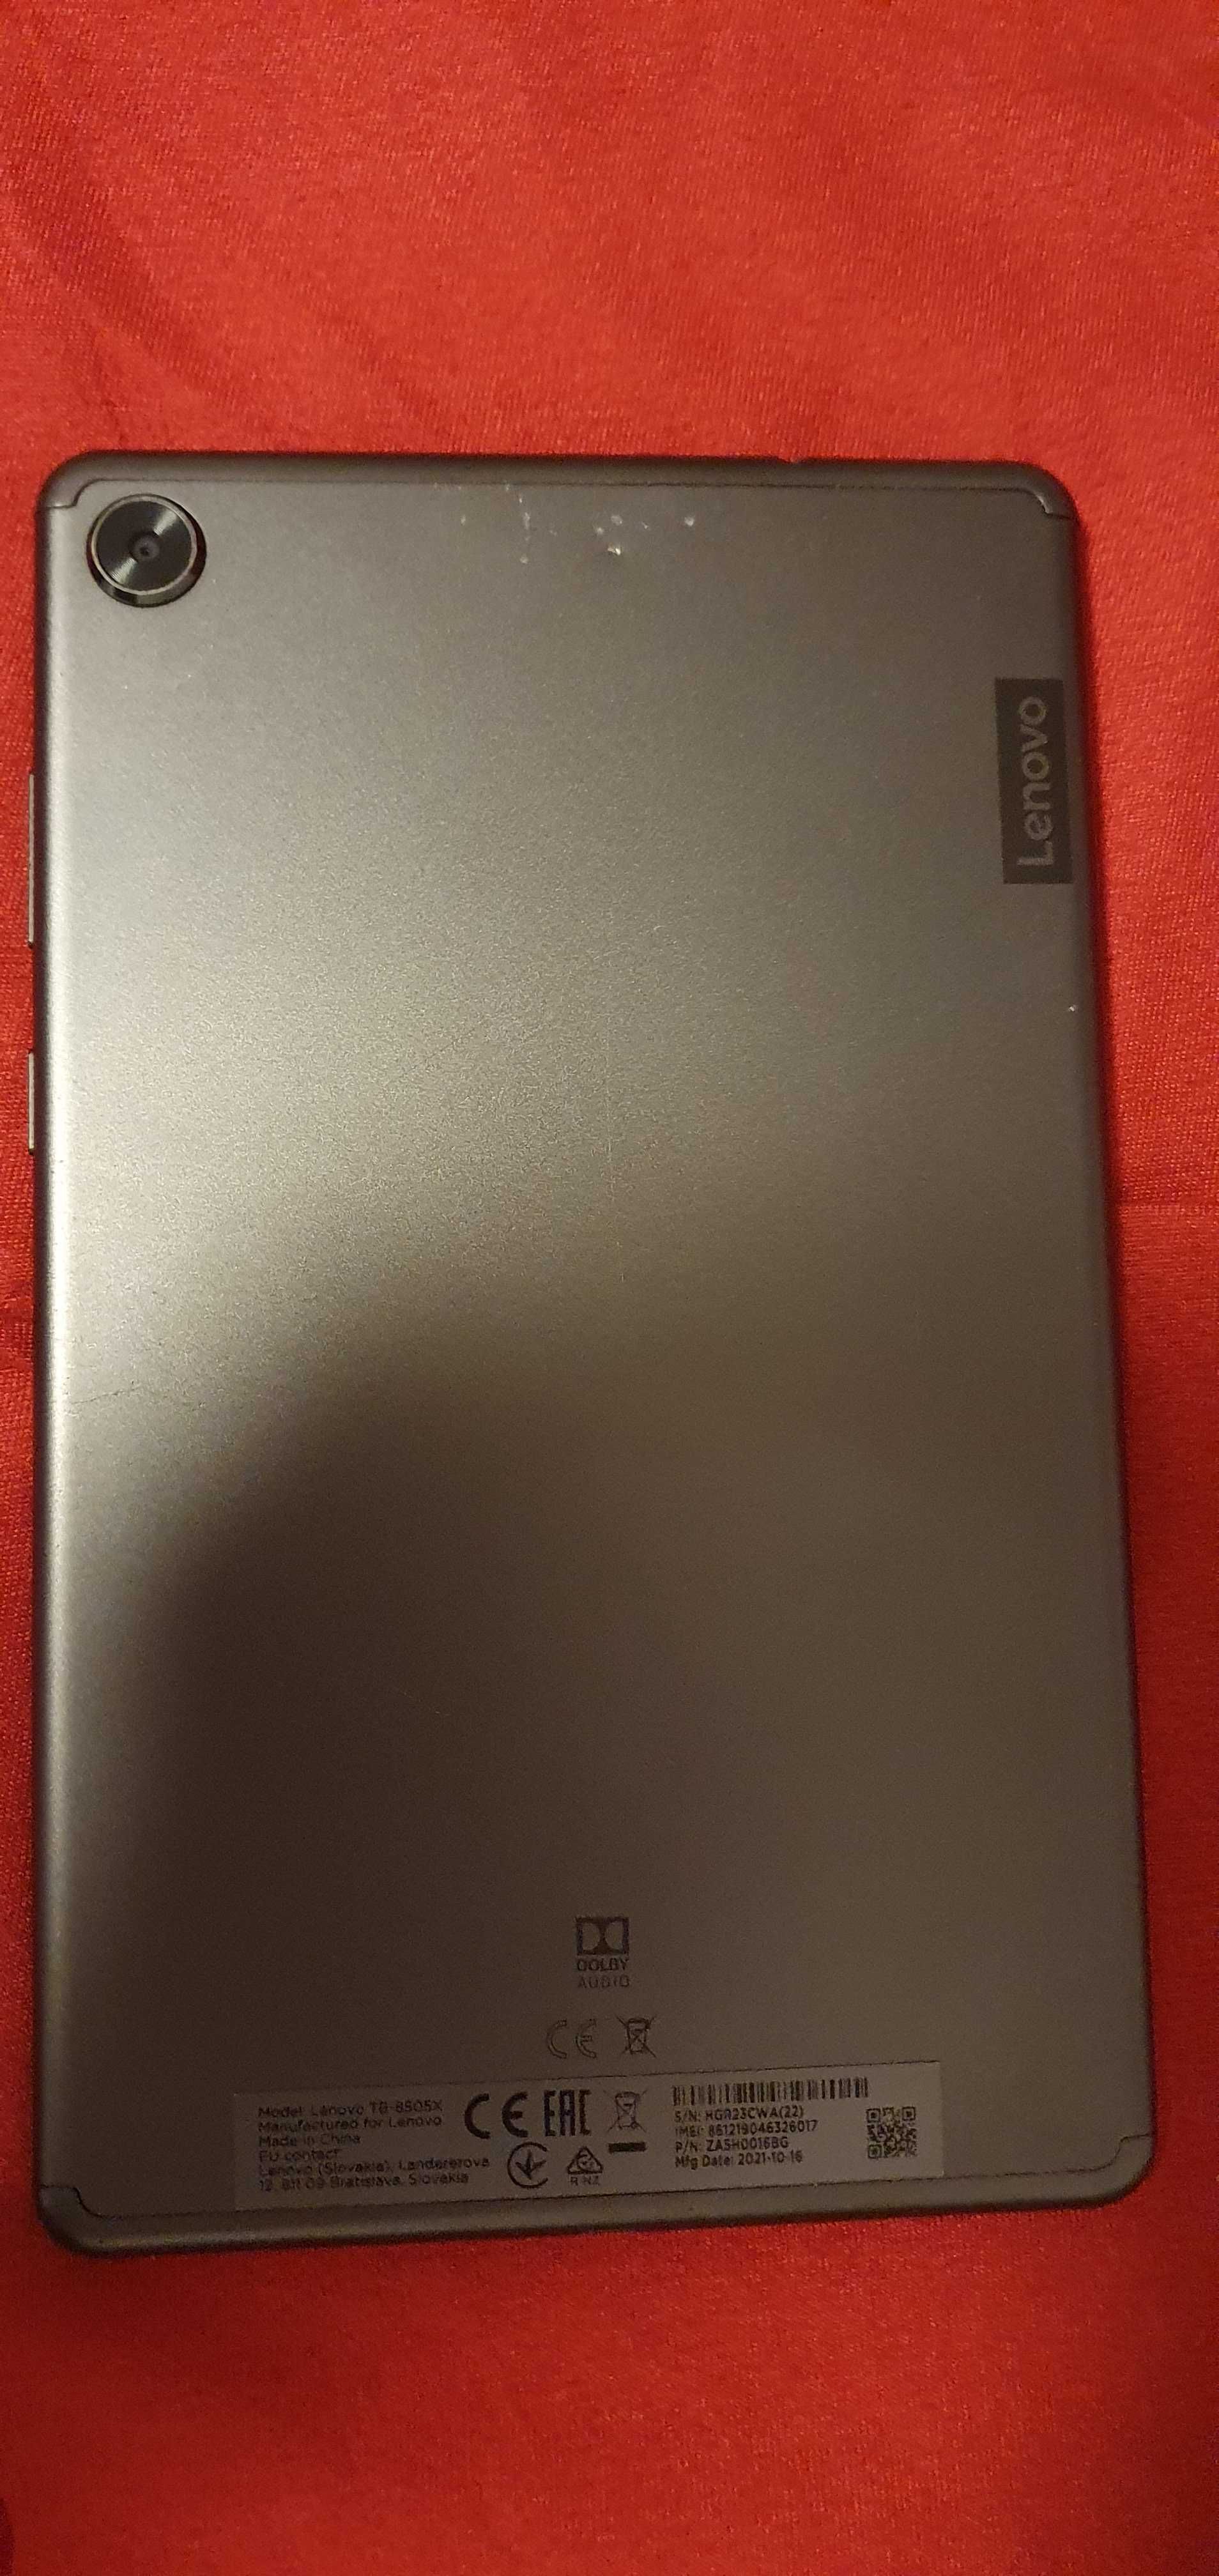 Tableta Lenovo Tab M8